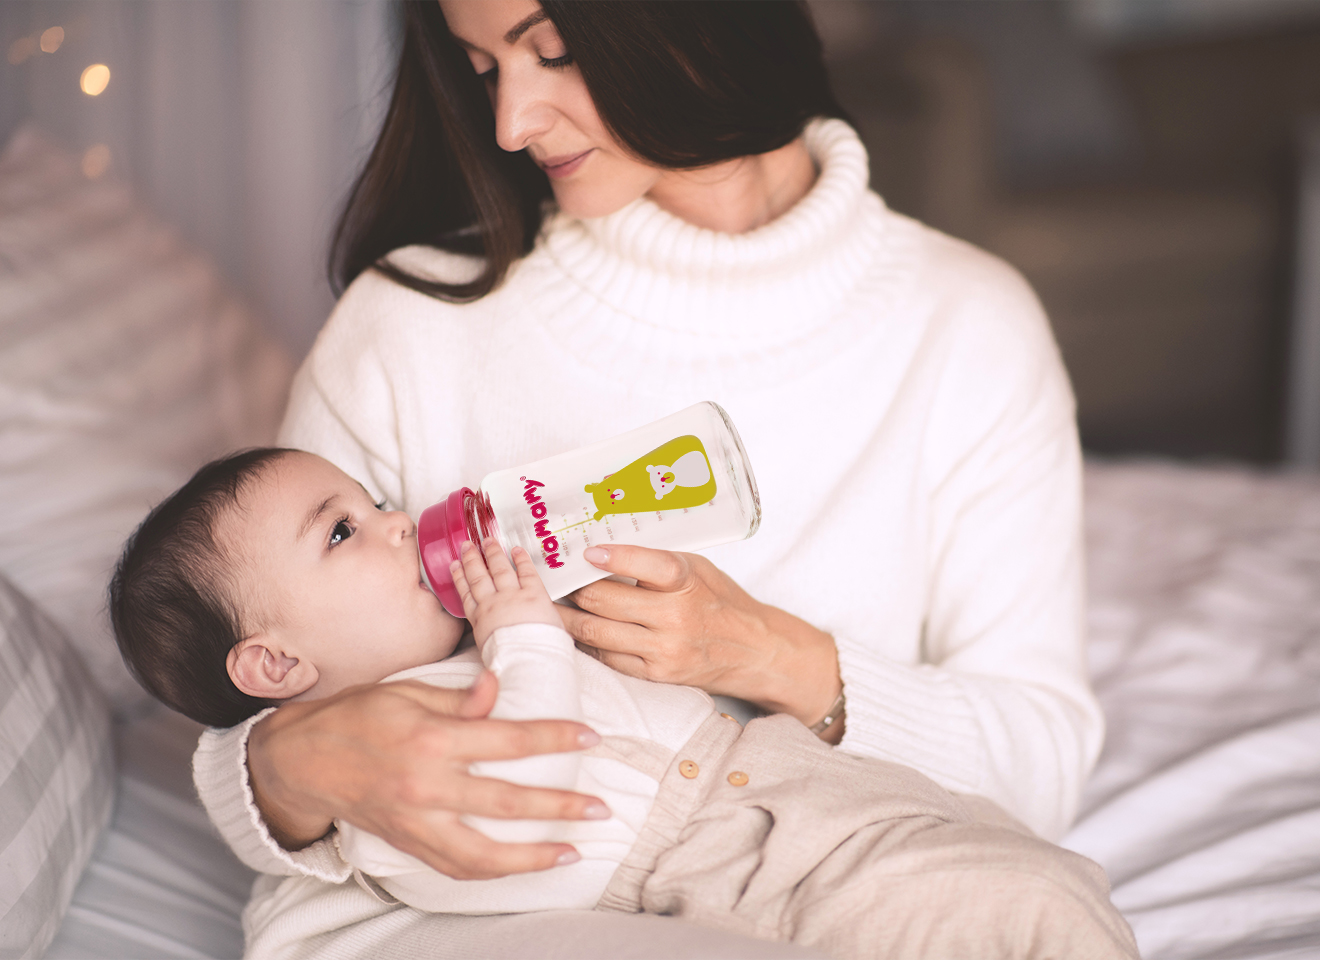 Hướng dẫn mẹ cách vệ sinh bình sữa sạch và an toàn cho bé